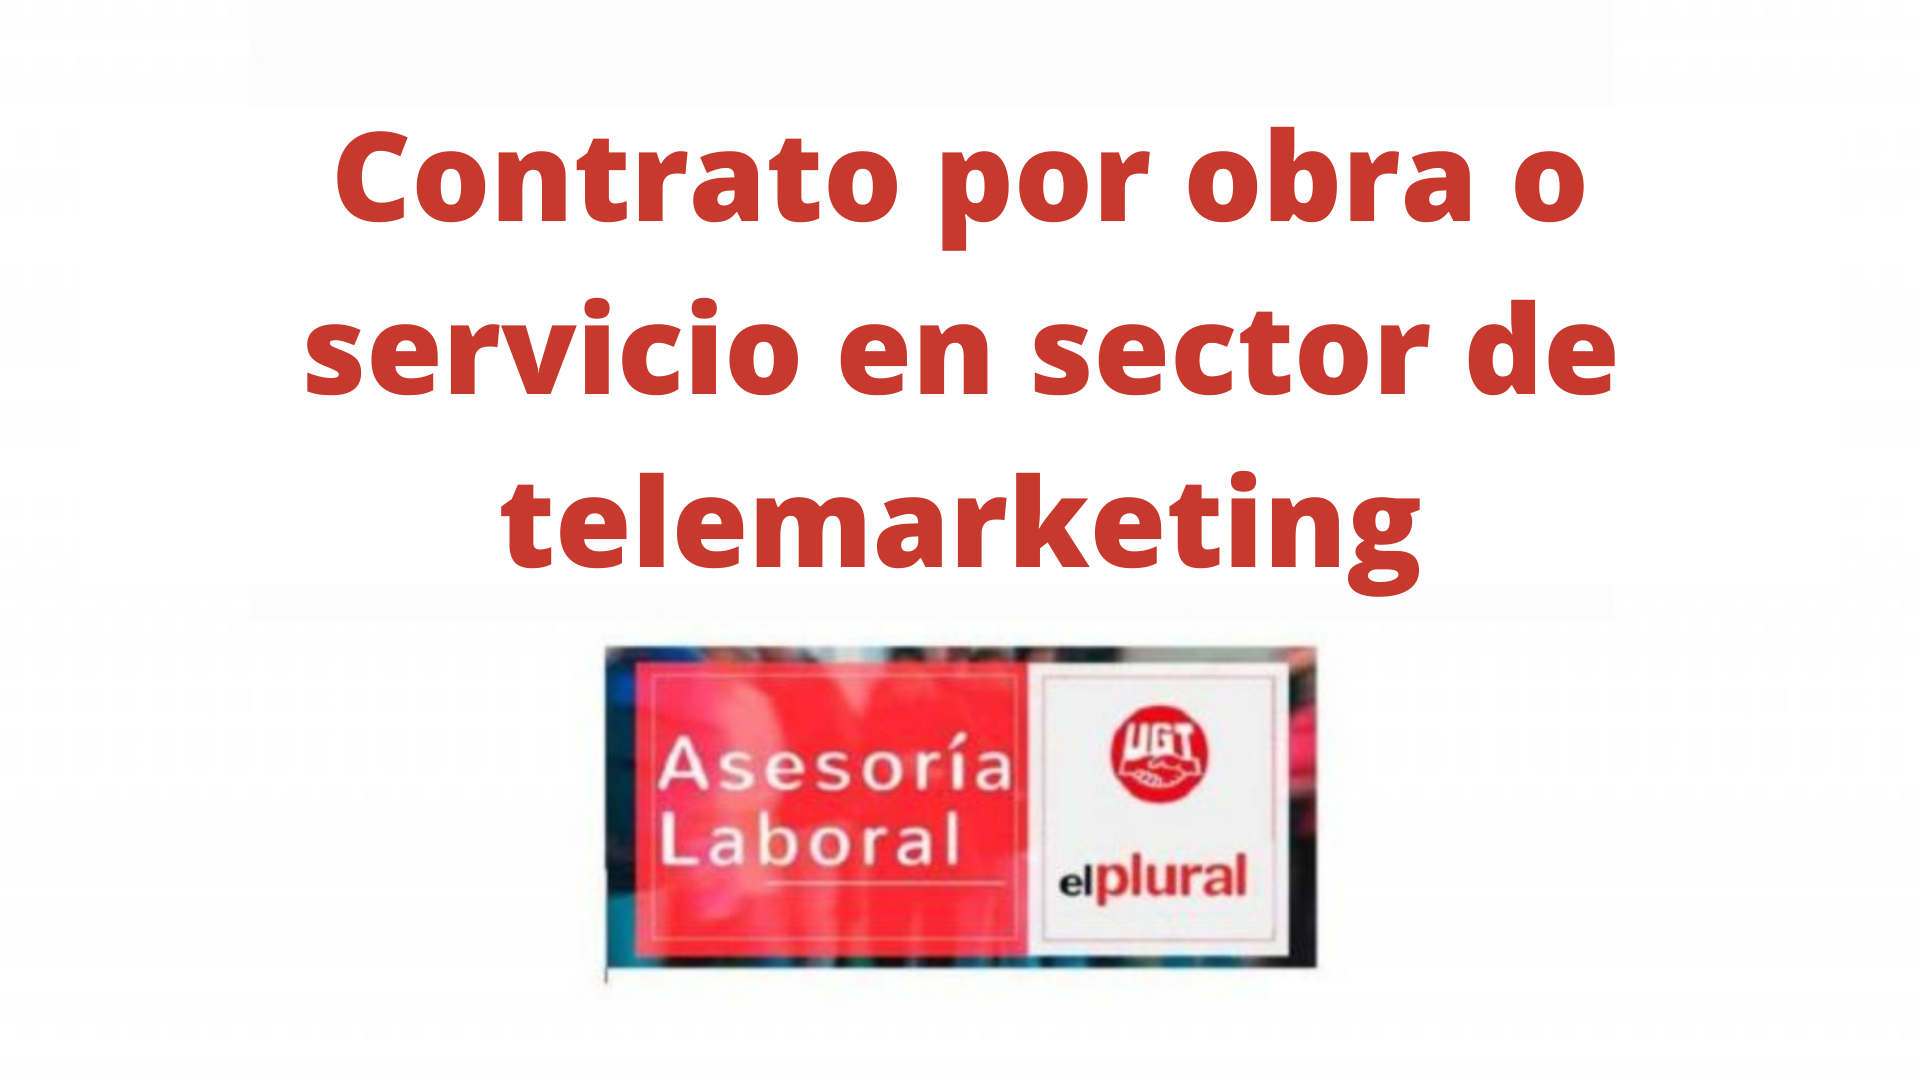 Contrato por obra o servicio en sector de telemarketing